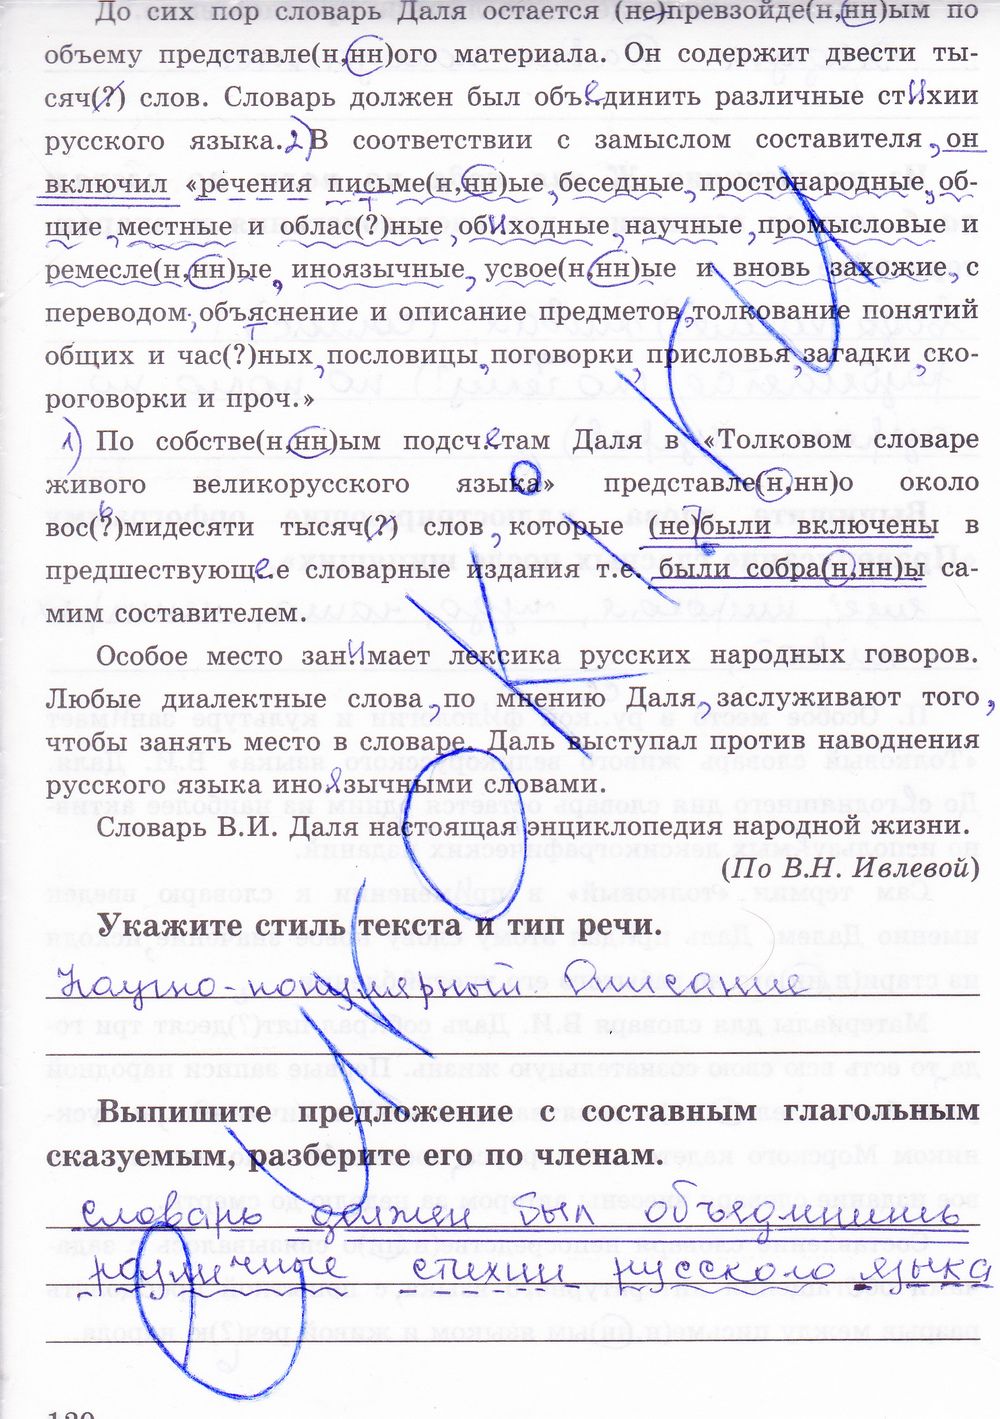 ГДЗ Русский язык 8 класс - стр. 120